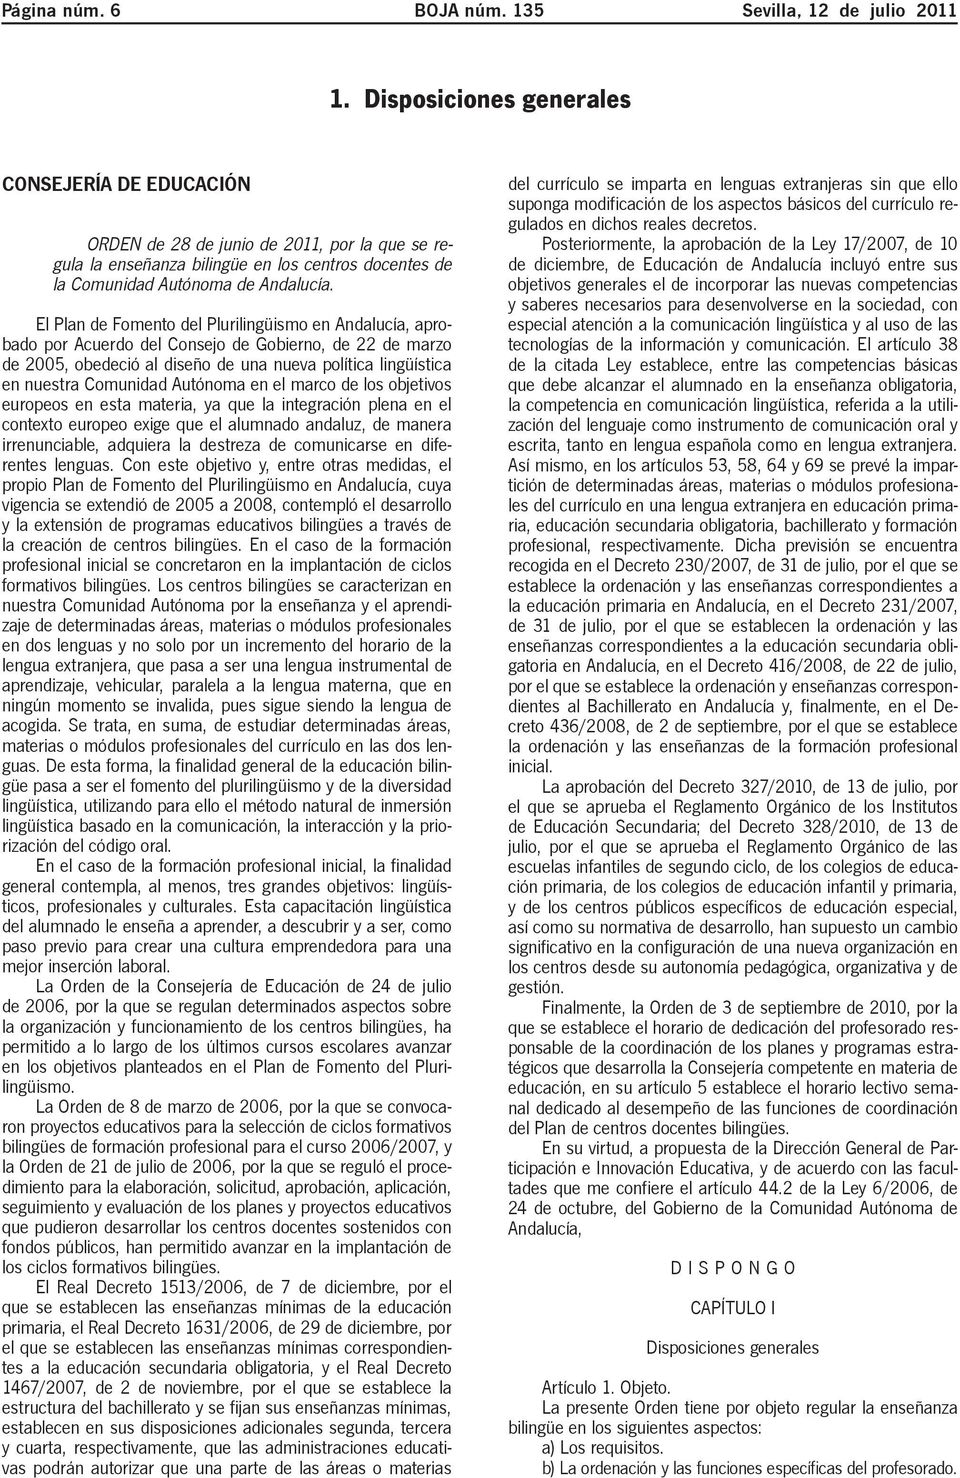 El Plan de Fomento del Plurilingüismo en Andalucía, aprobado por Acuerdo del Consejo de Gobierno, de 22 de marzo de 2005, obedeció al diseño de una nueva política lingüística en nuestra Comunidad